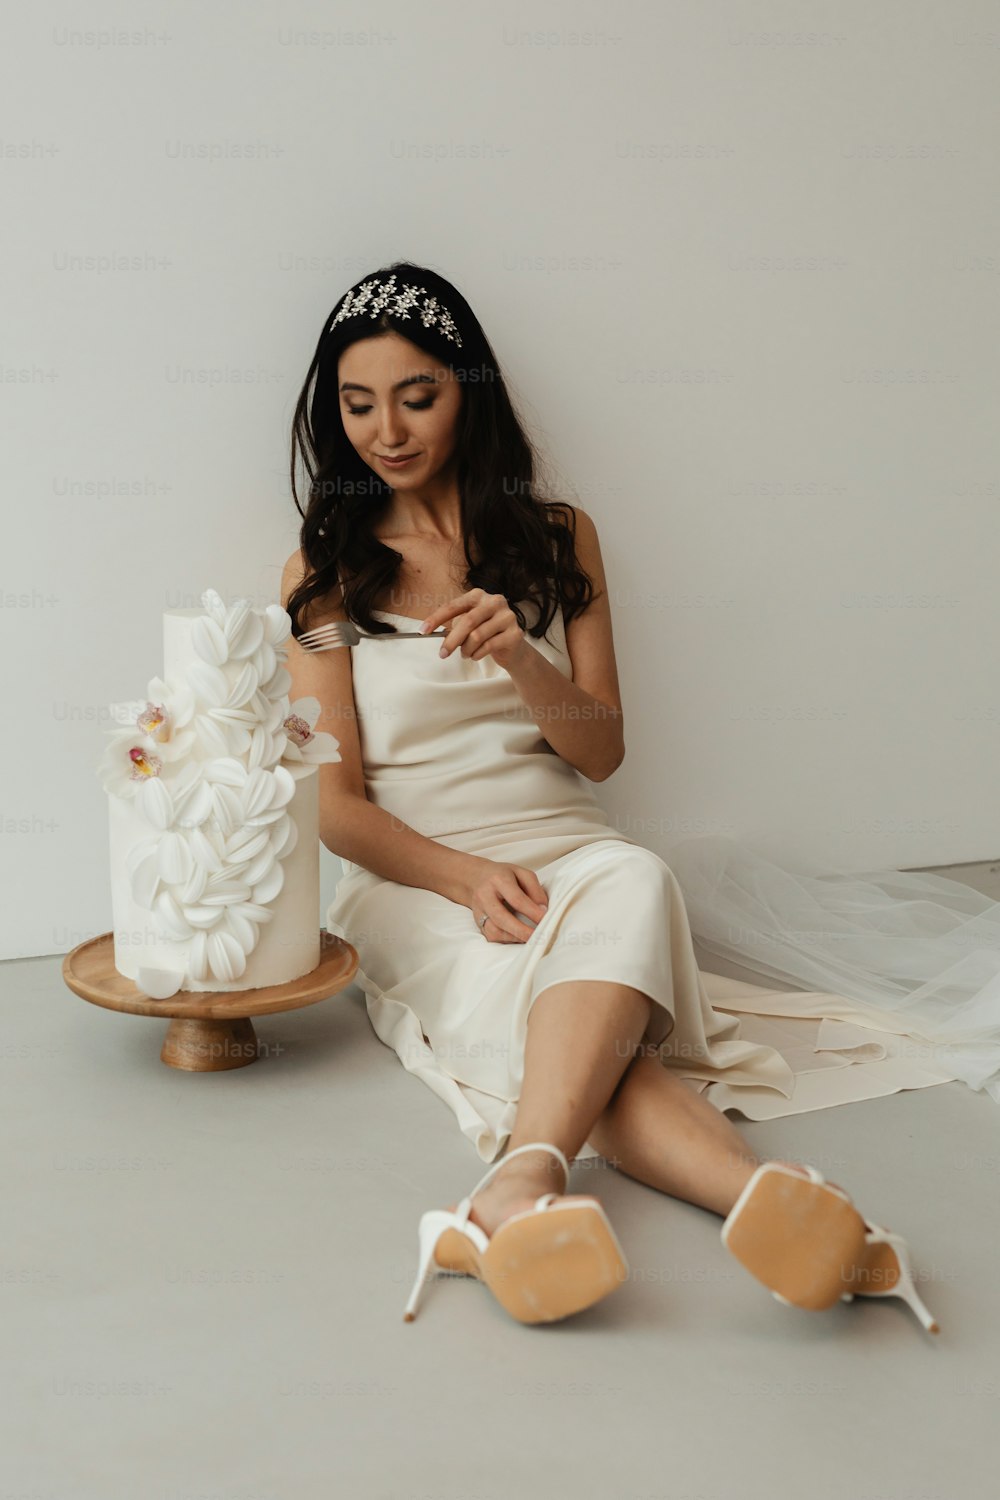 Eine Frau im weißen Kleid sitzt neben einem Kuchen